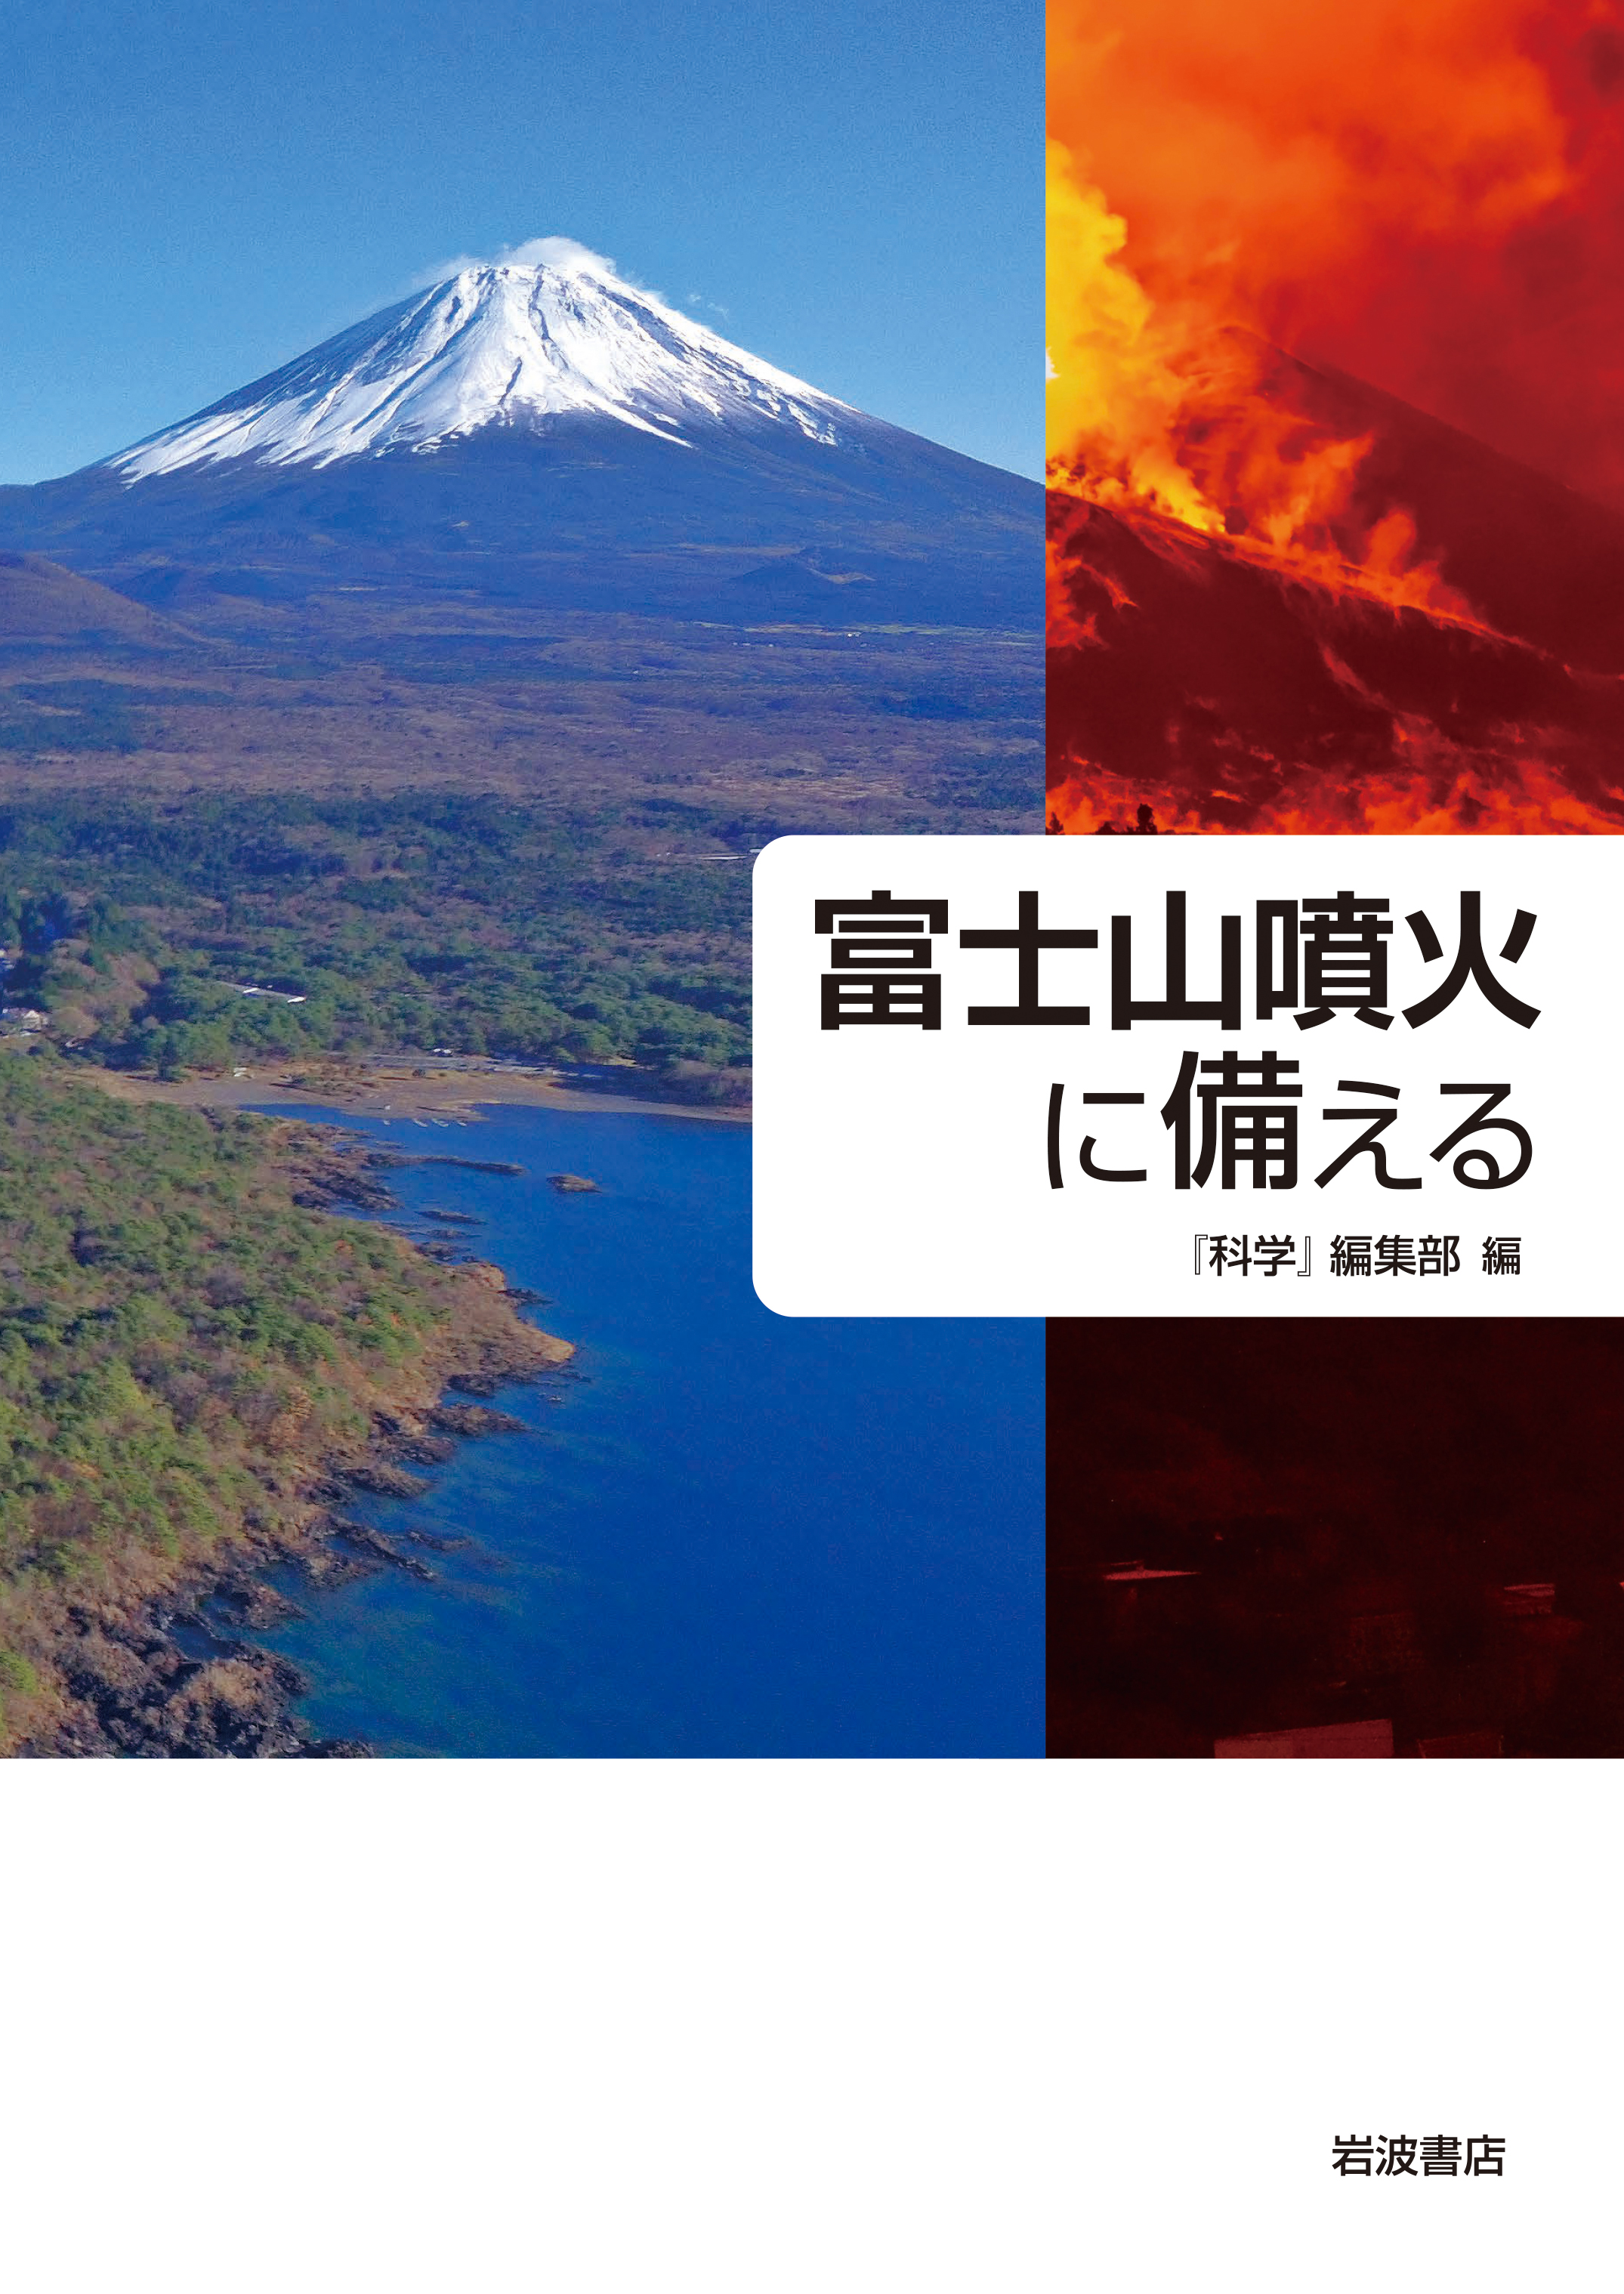 富士山と噴火の写真